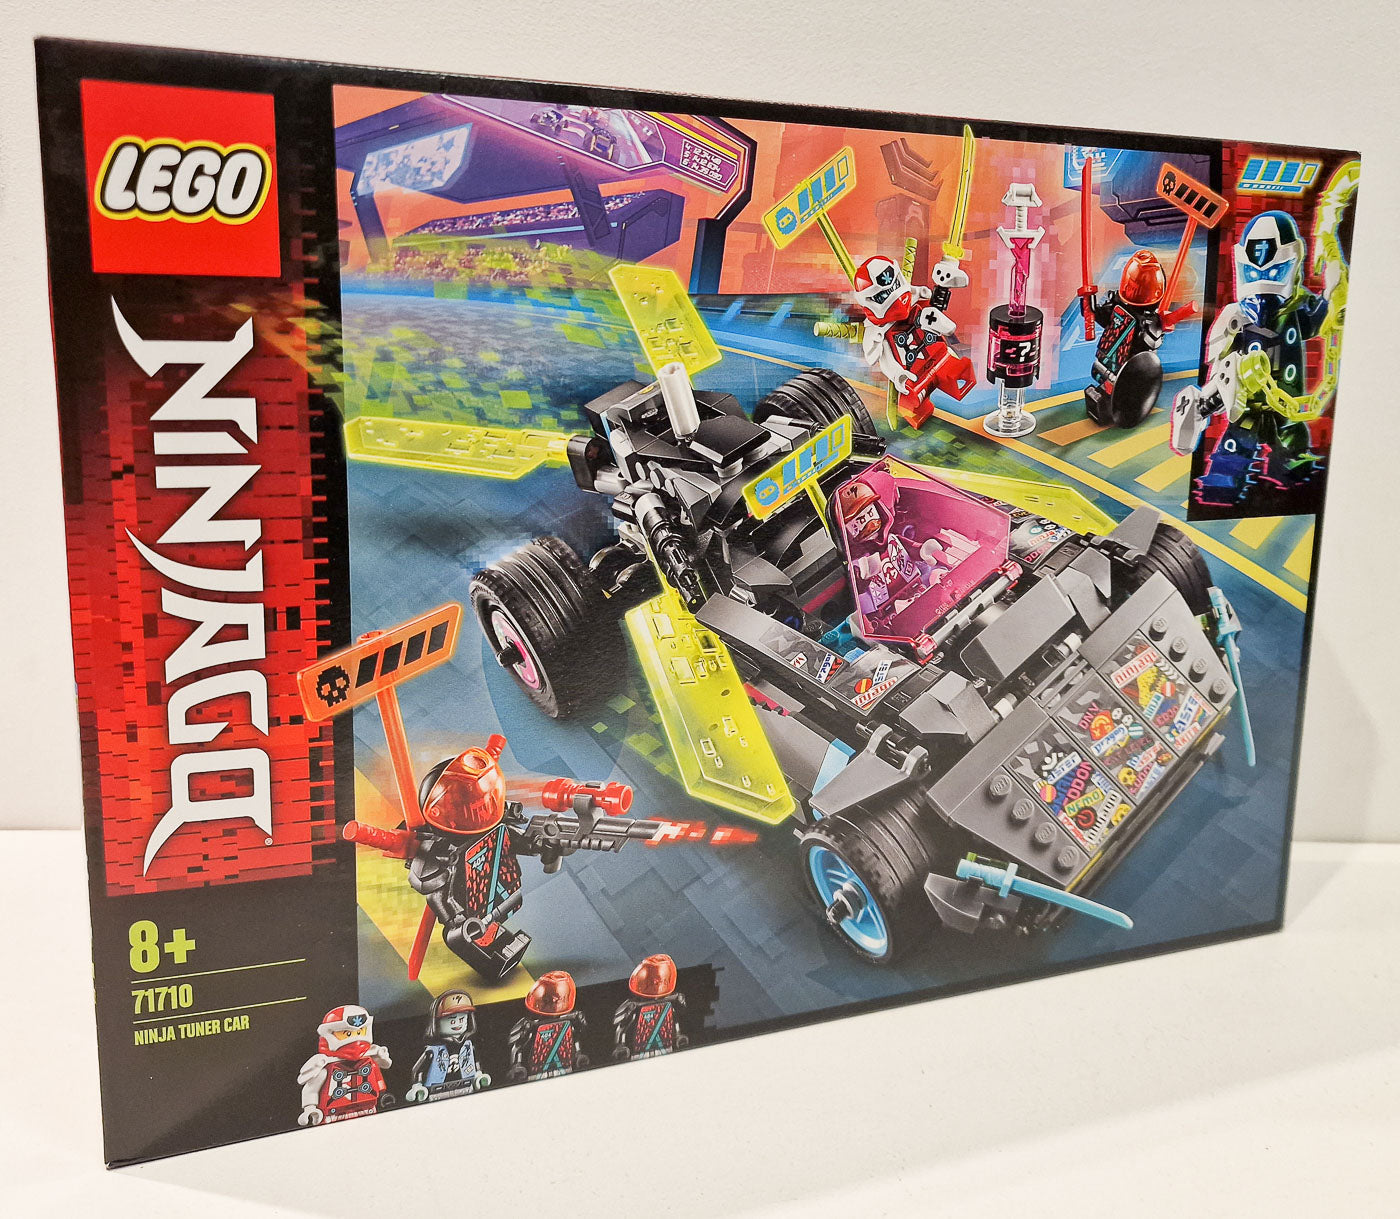 LEGO 71710 Ninjago Ninja Tuner Car